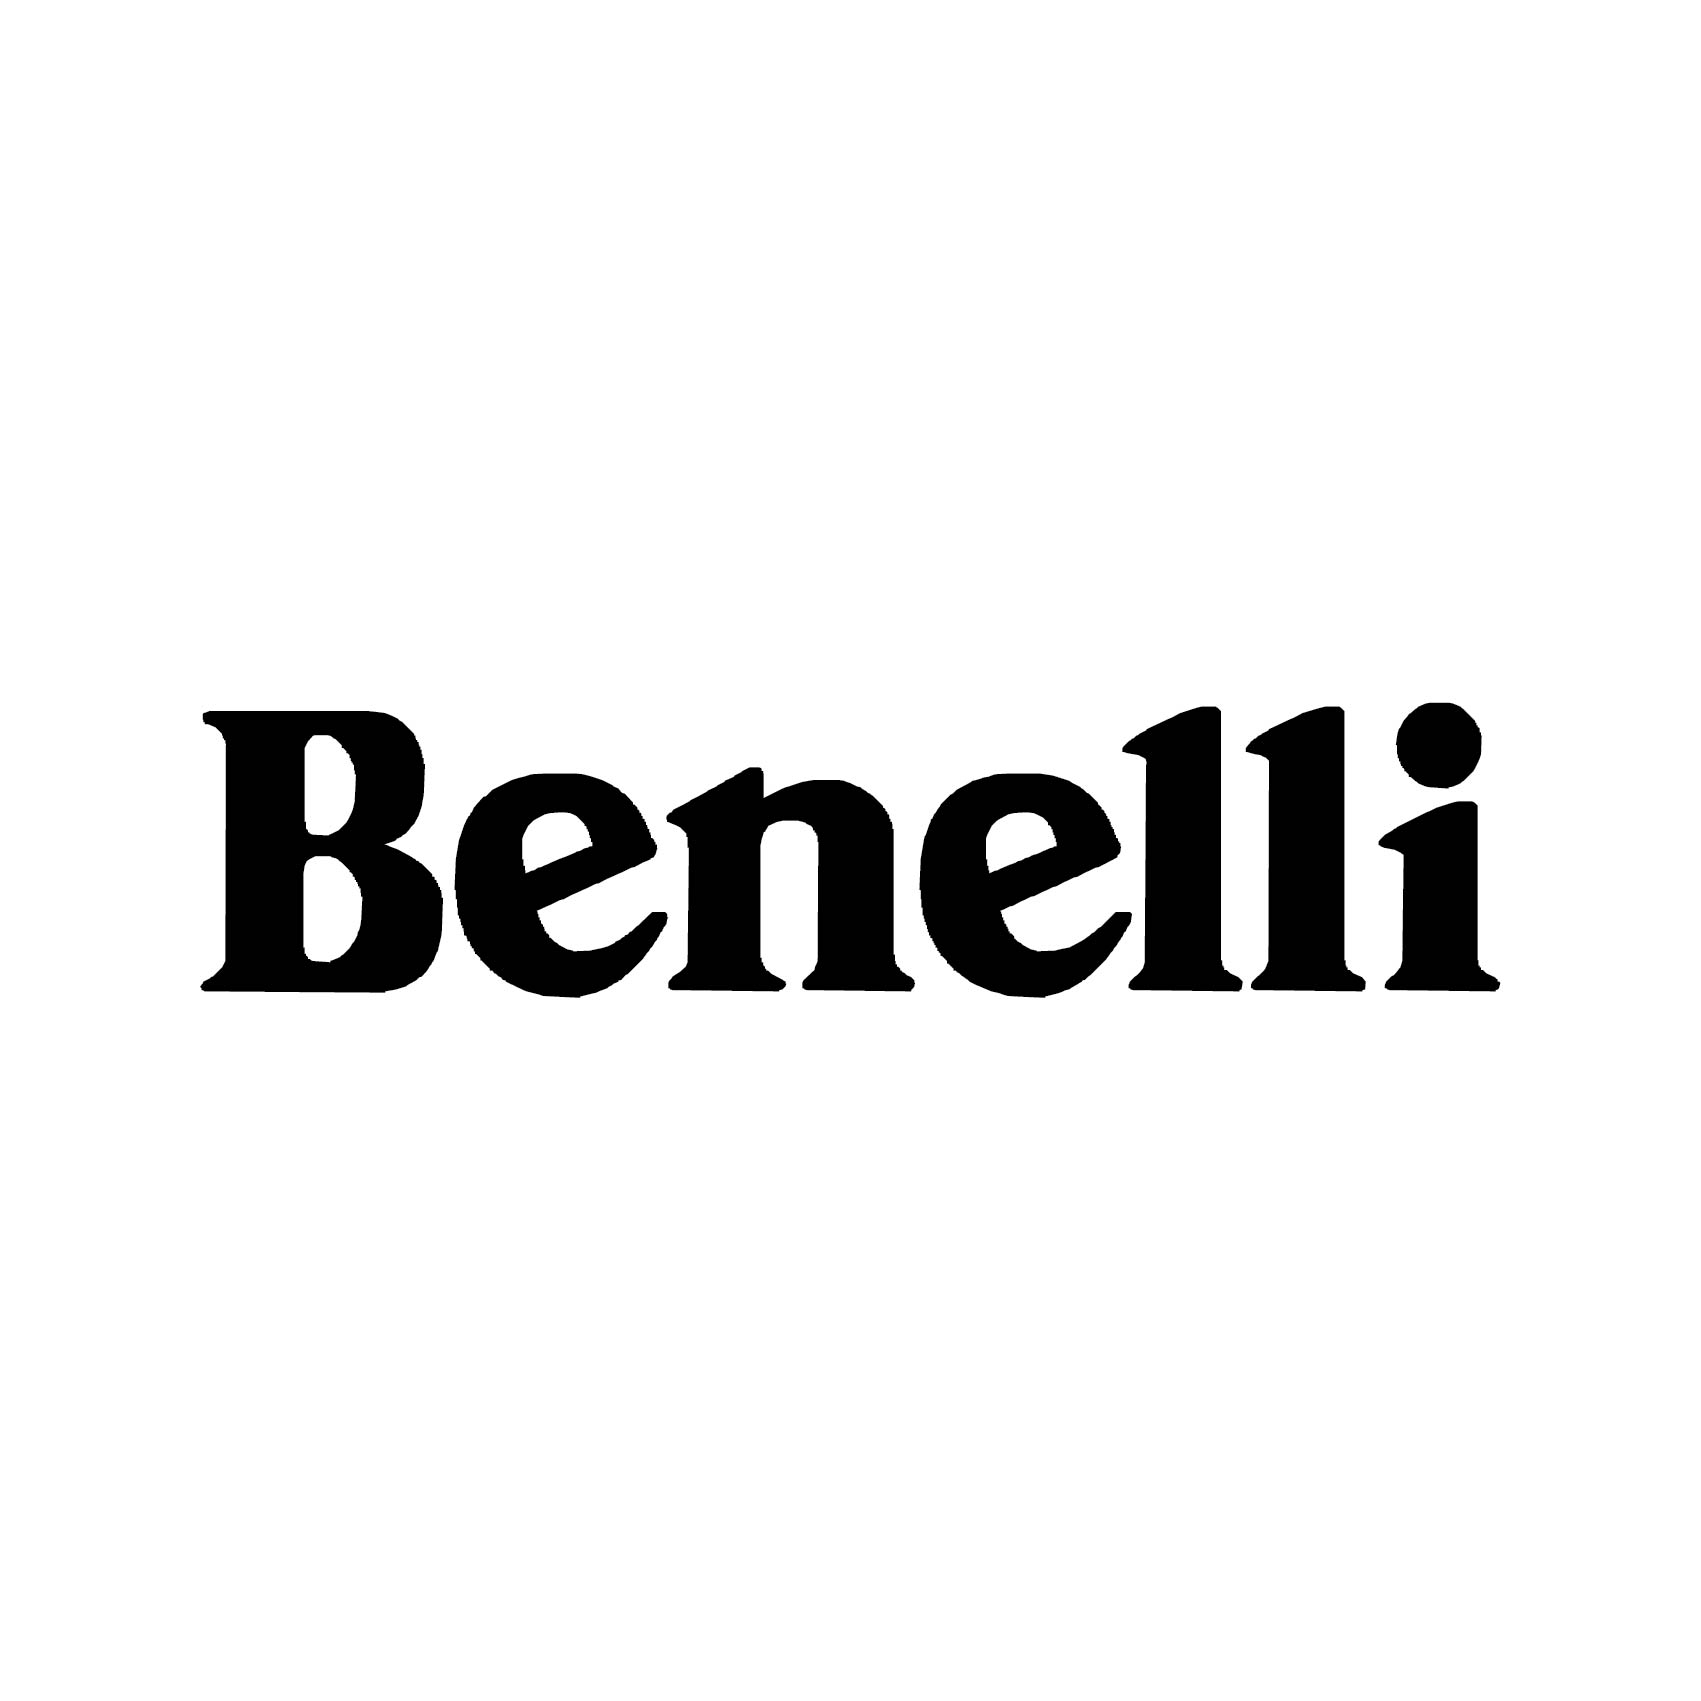 stickers-benelli-ecriture-ref2benelli-autocollant-benelli-moto-sticker-pour-moto-sport